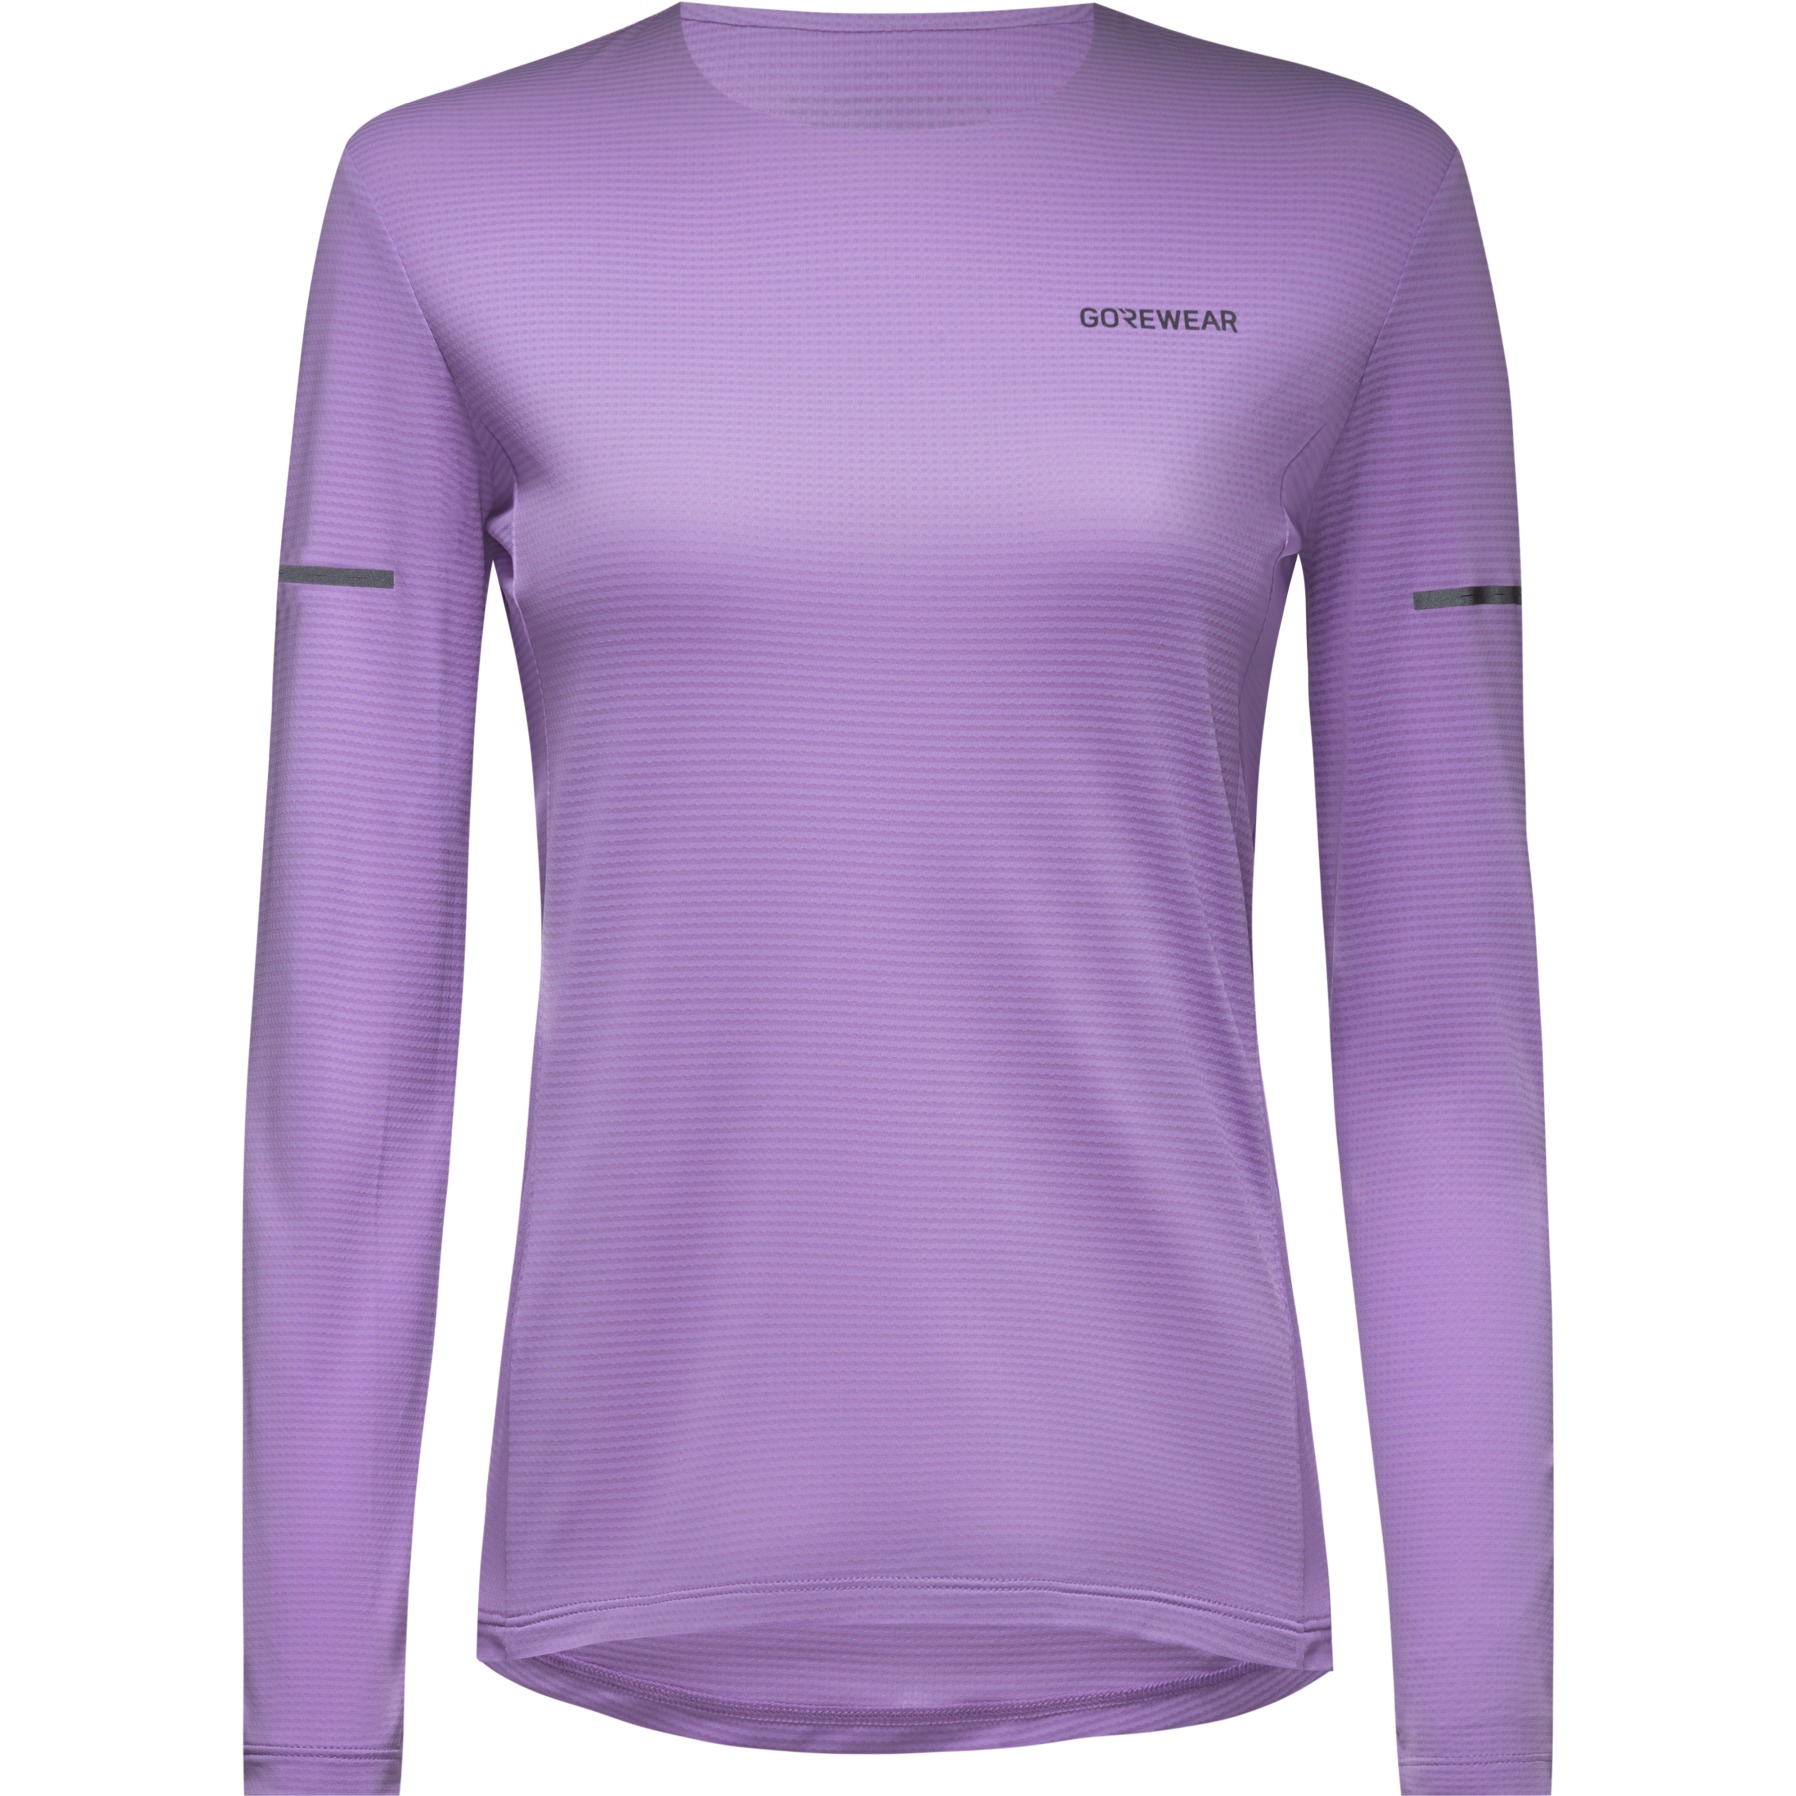 Produktbild von GOREWEAR Contest 2.0 Langarmshirt Damen - scrub purple BX00